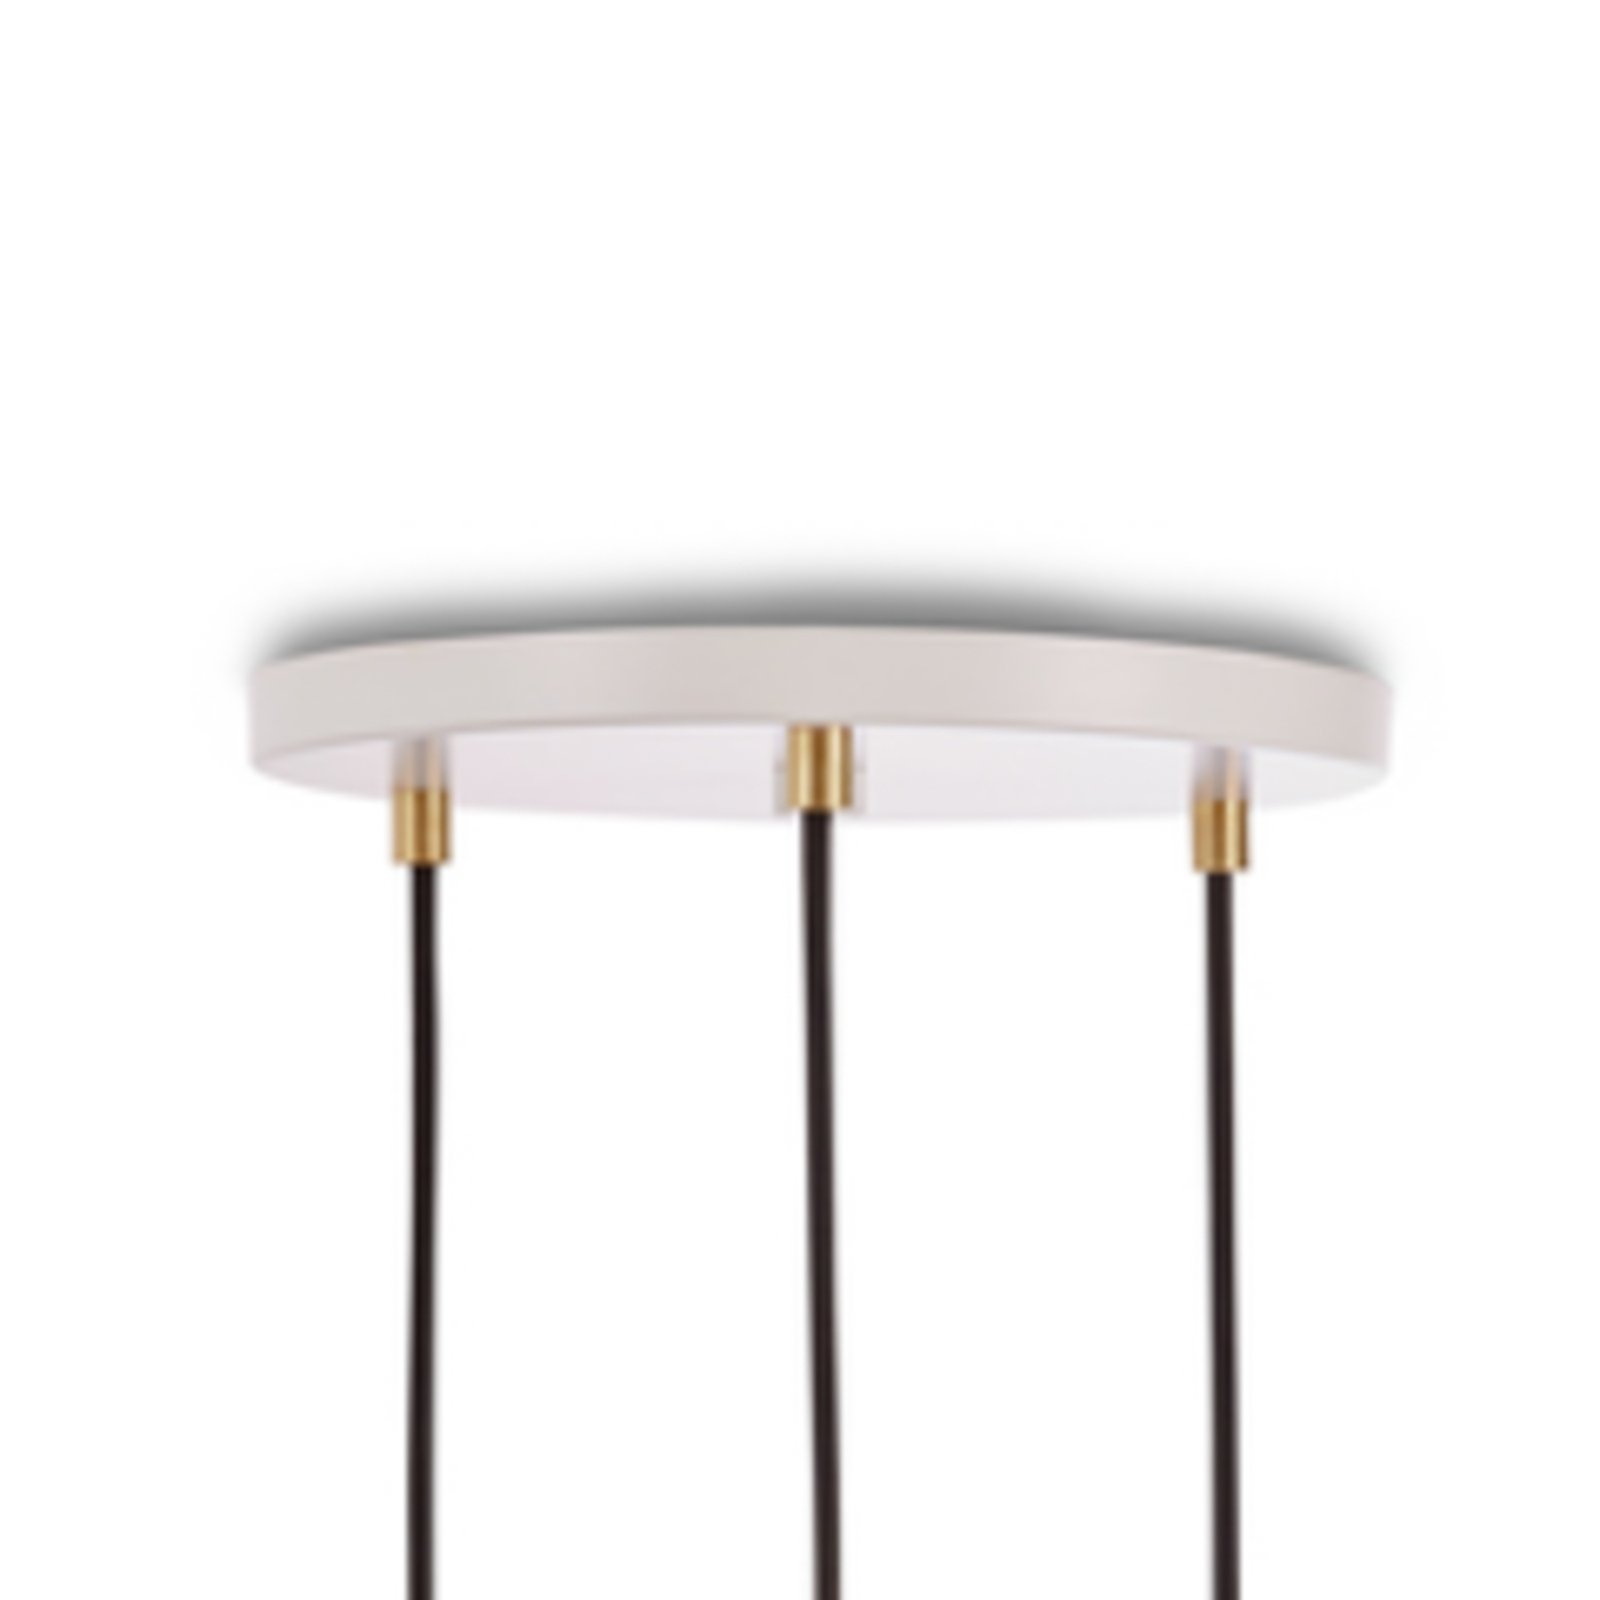 Lampa wisząca Tala Triple Pendant okrągła, E27 opal, biały/mosiądz